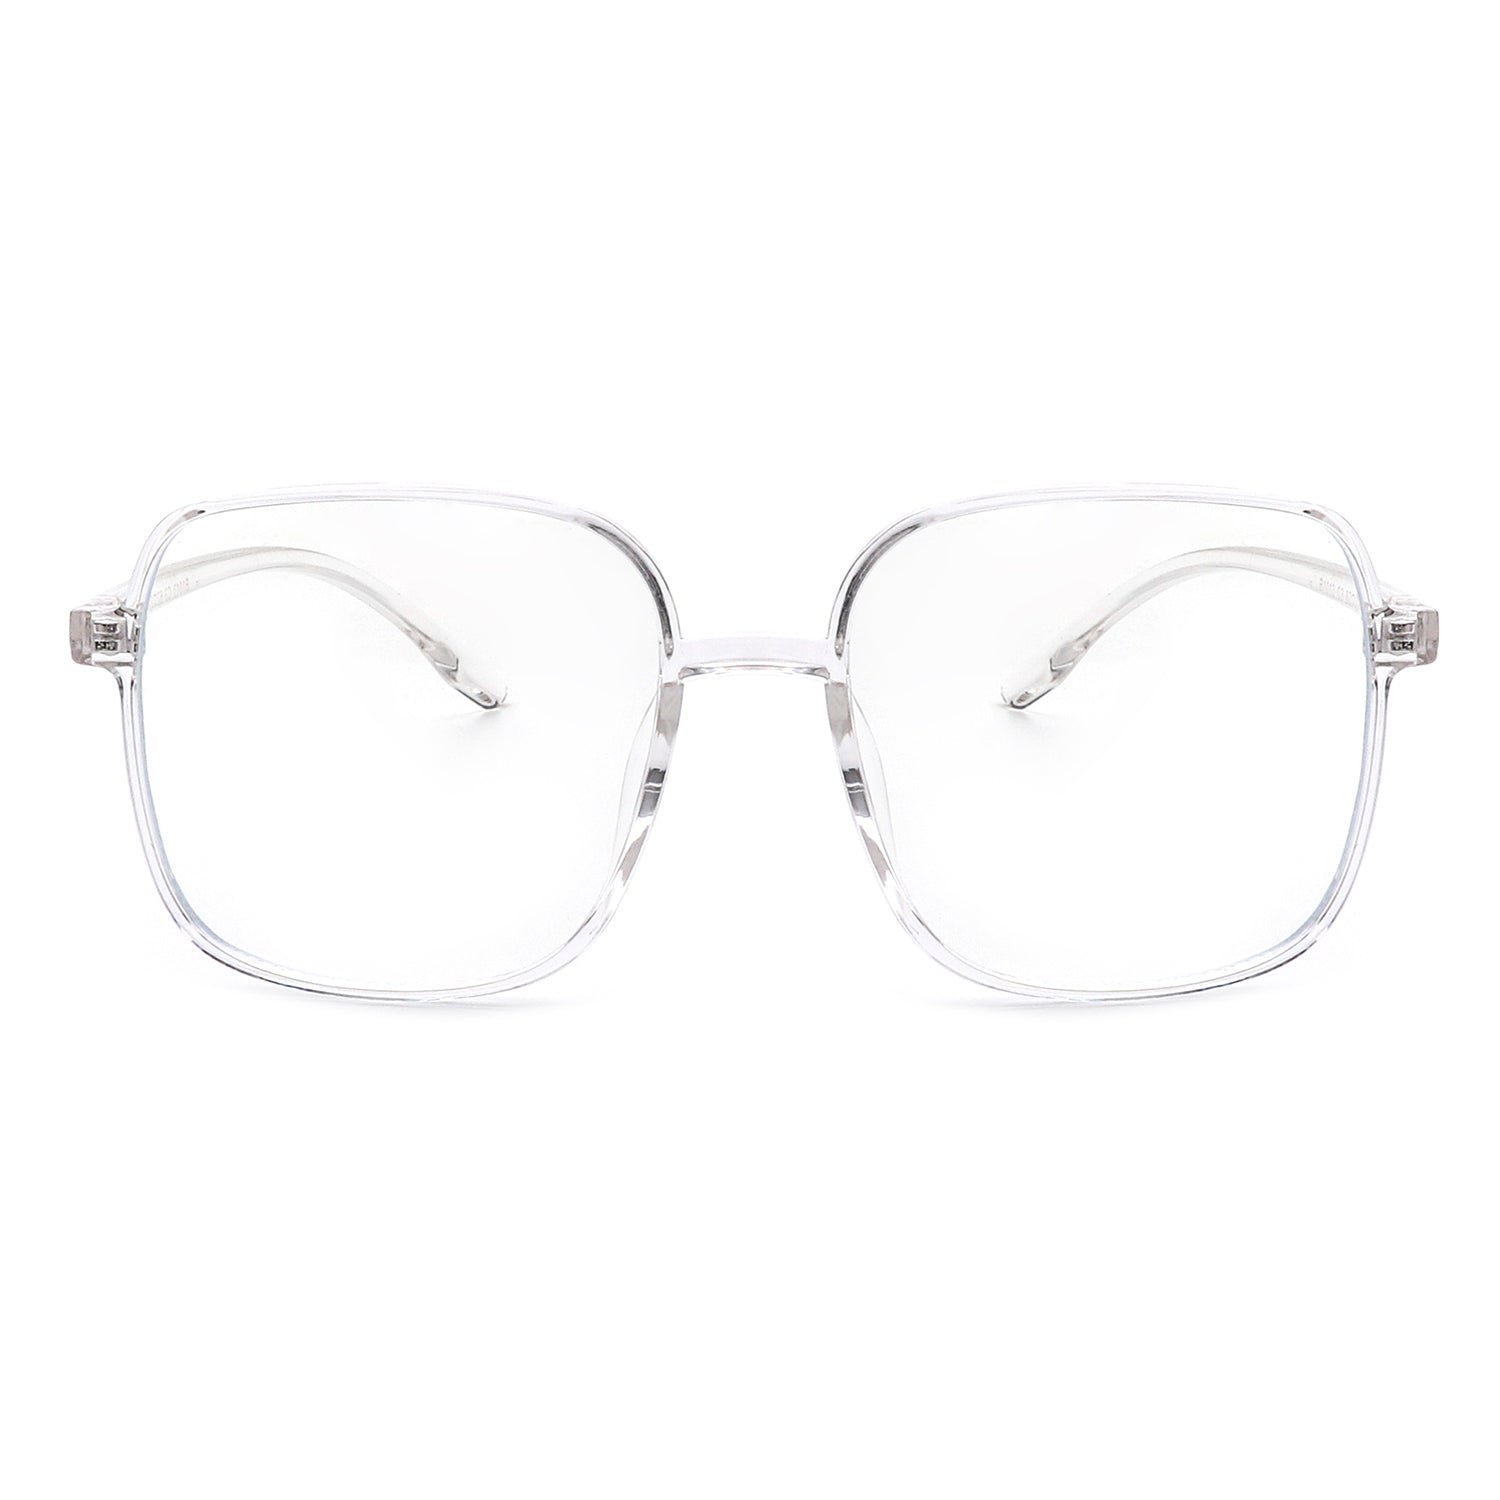 B1013 - Square Large Oversize Blue Light Blocker Fashion Glasses